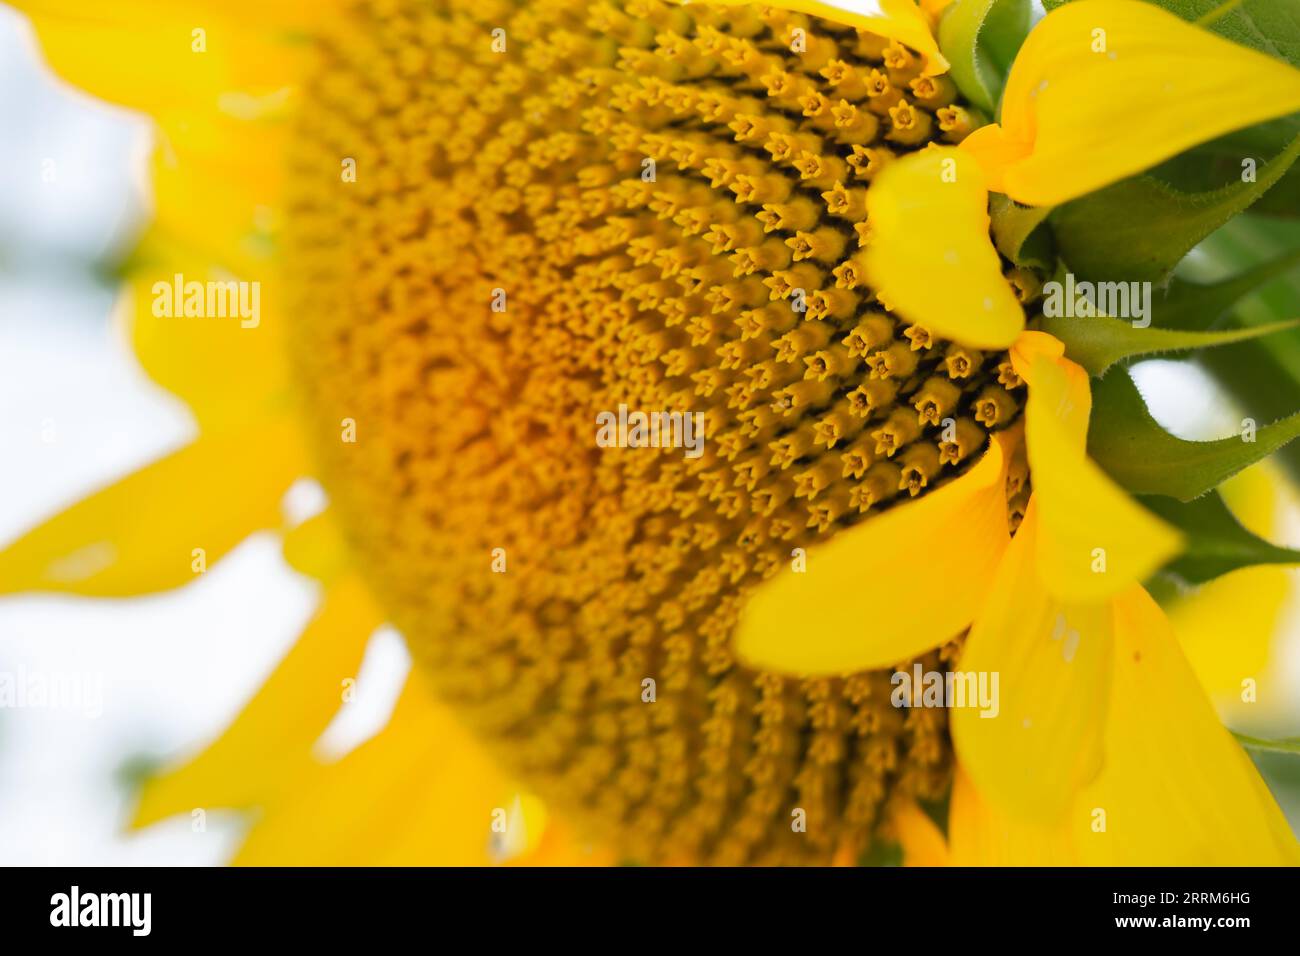 Helle Sonnenblume, Nahaufnahme. Agrarkonzept. Bestäubungskonzept. Sonnenblumenplantage. Gelbe Blume im Sonnenschein. Goldene Blume. Stockfoto